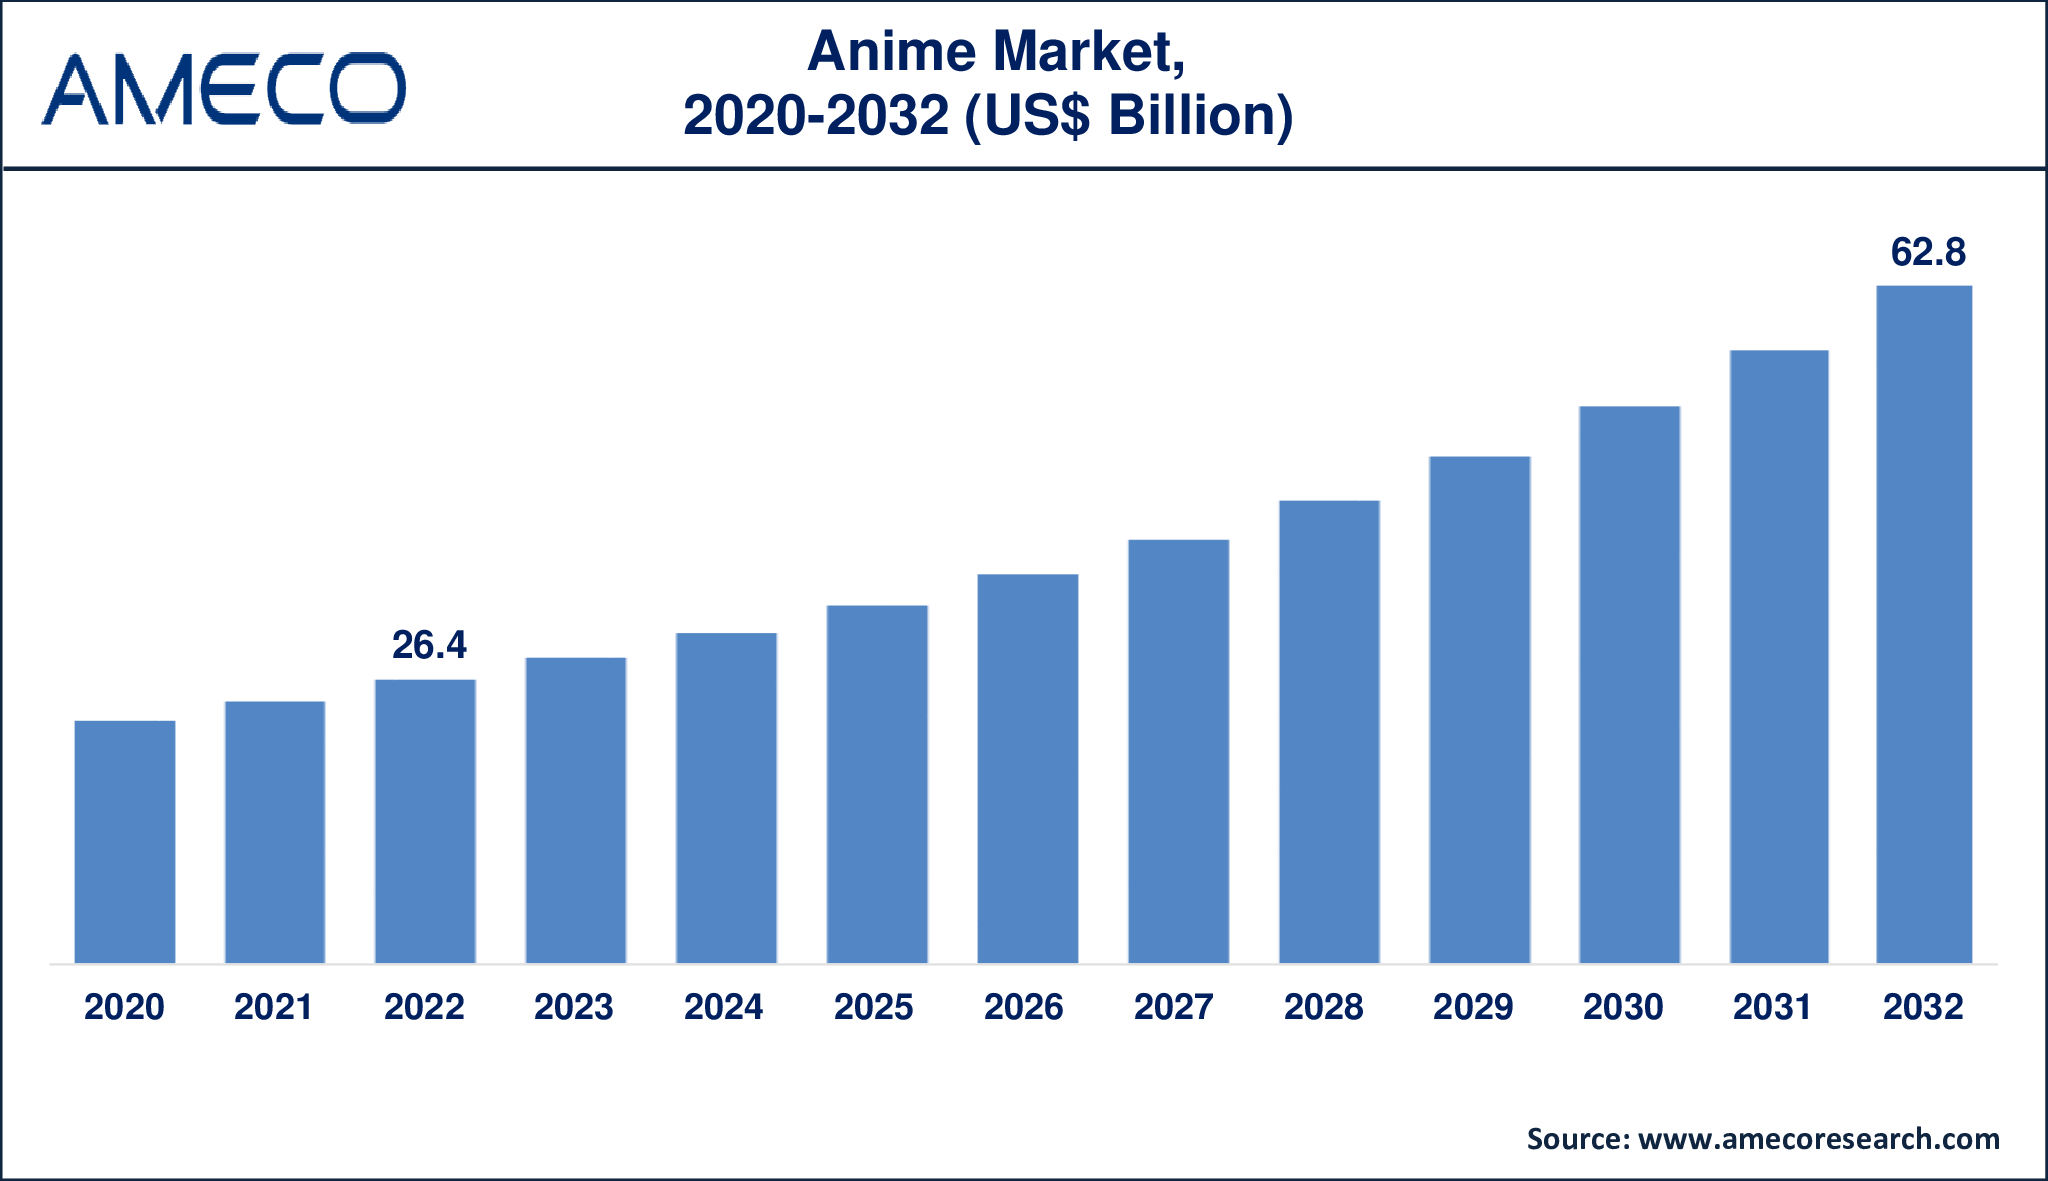 Anime Market Dynamics